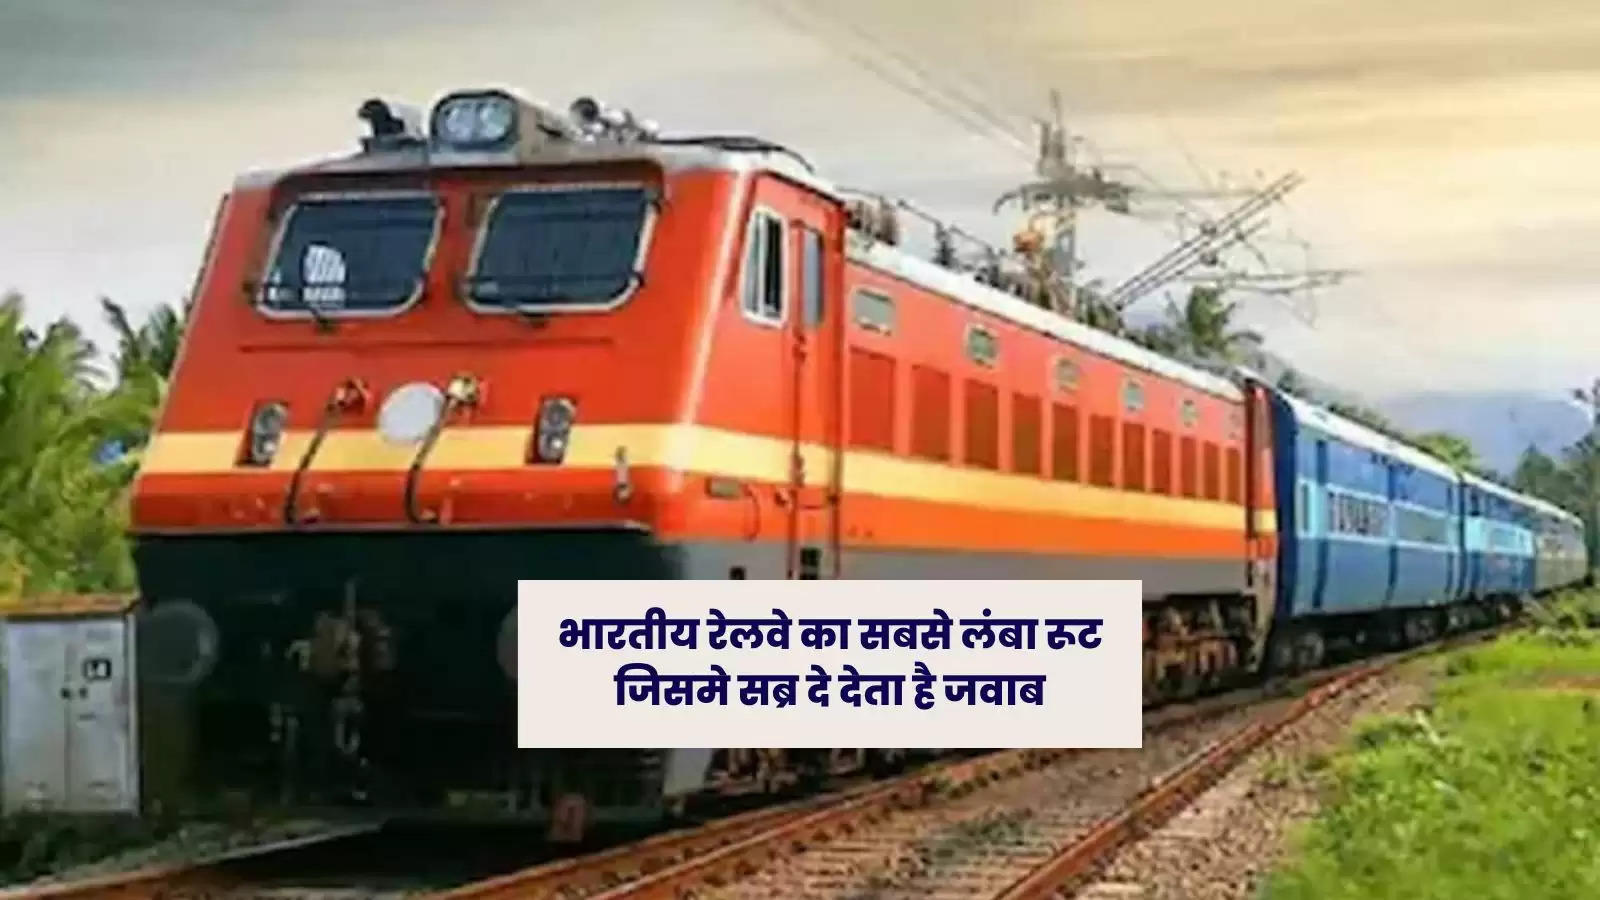 भारतीय रेलवे का सबसे लंबा रूट जिसमे सब्र दे देता है जवाब